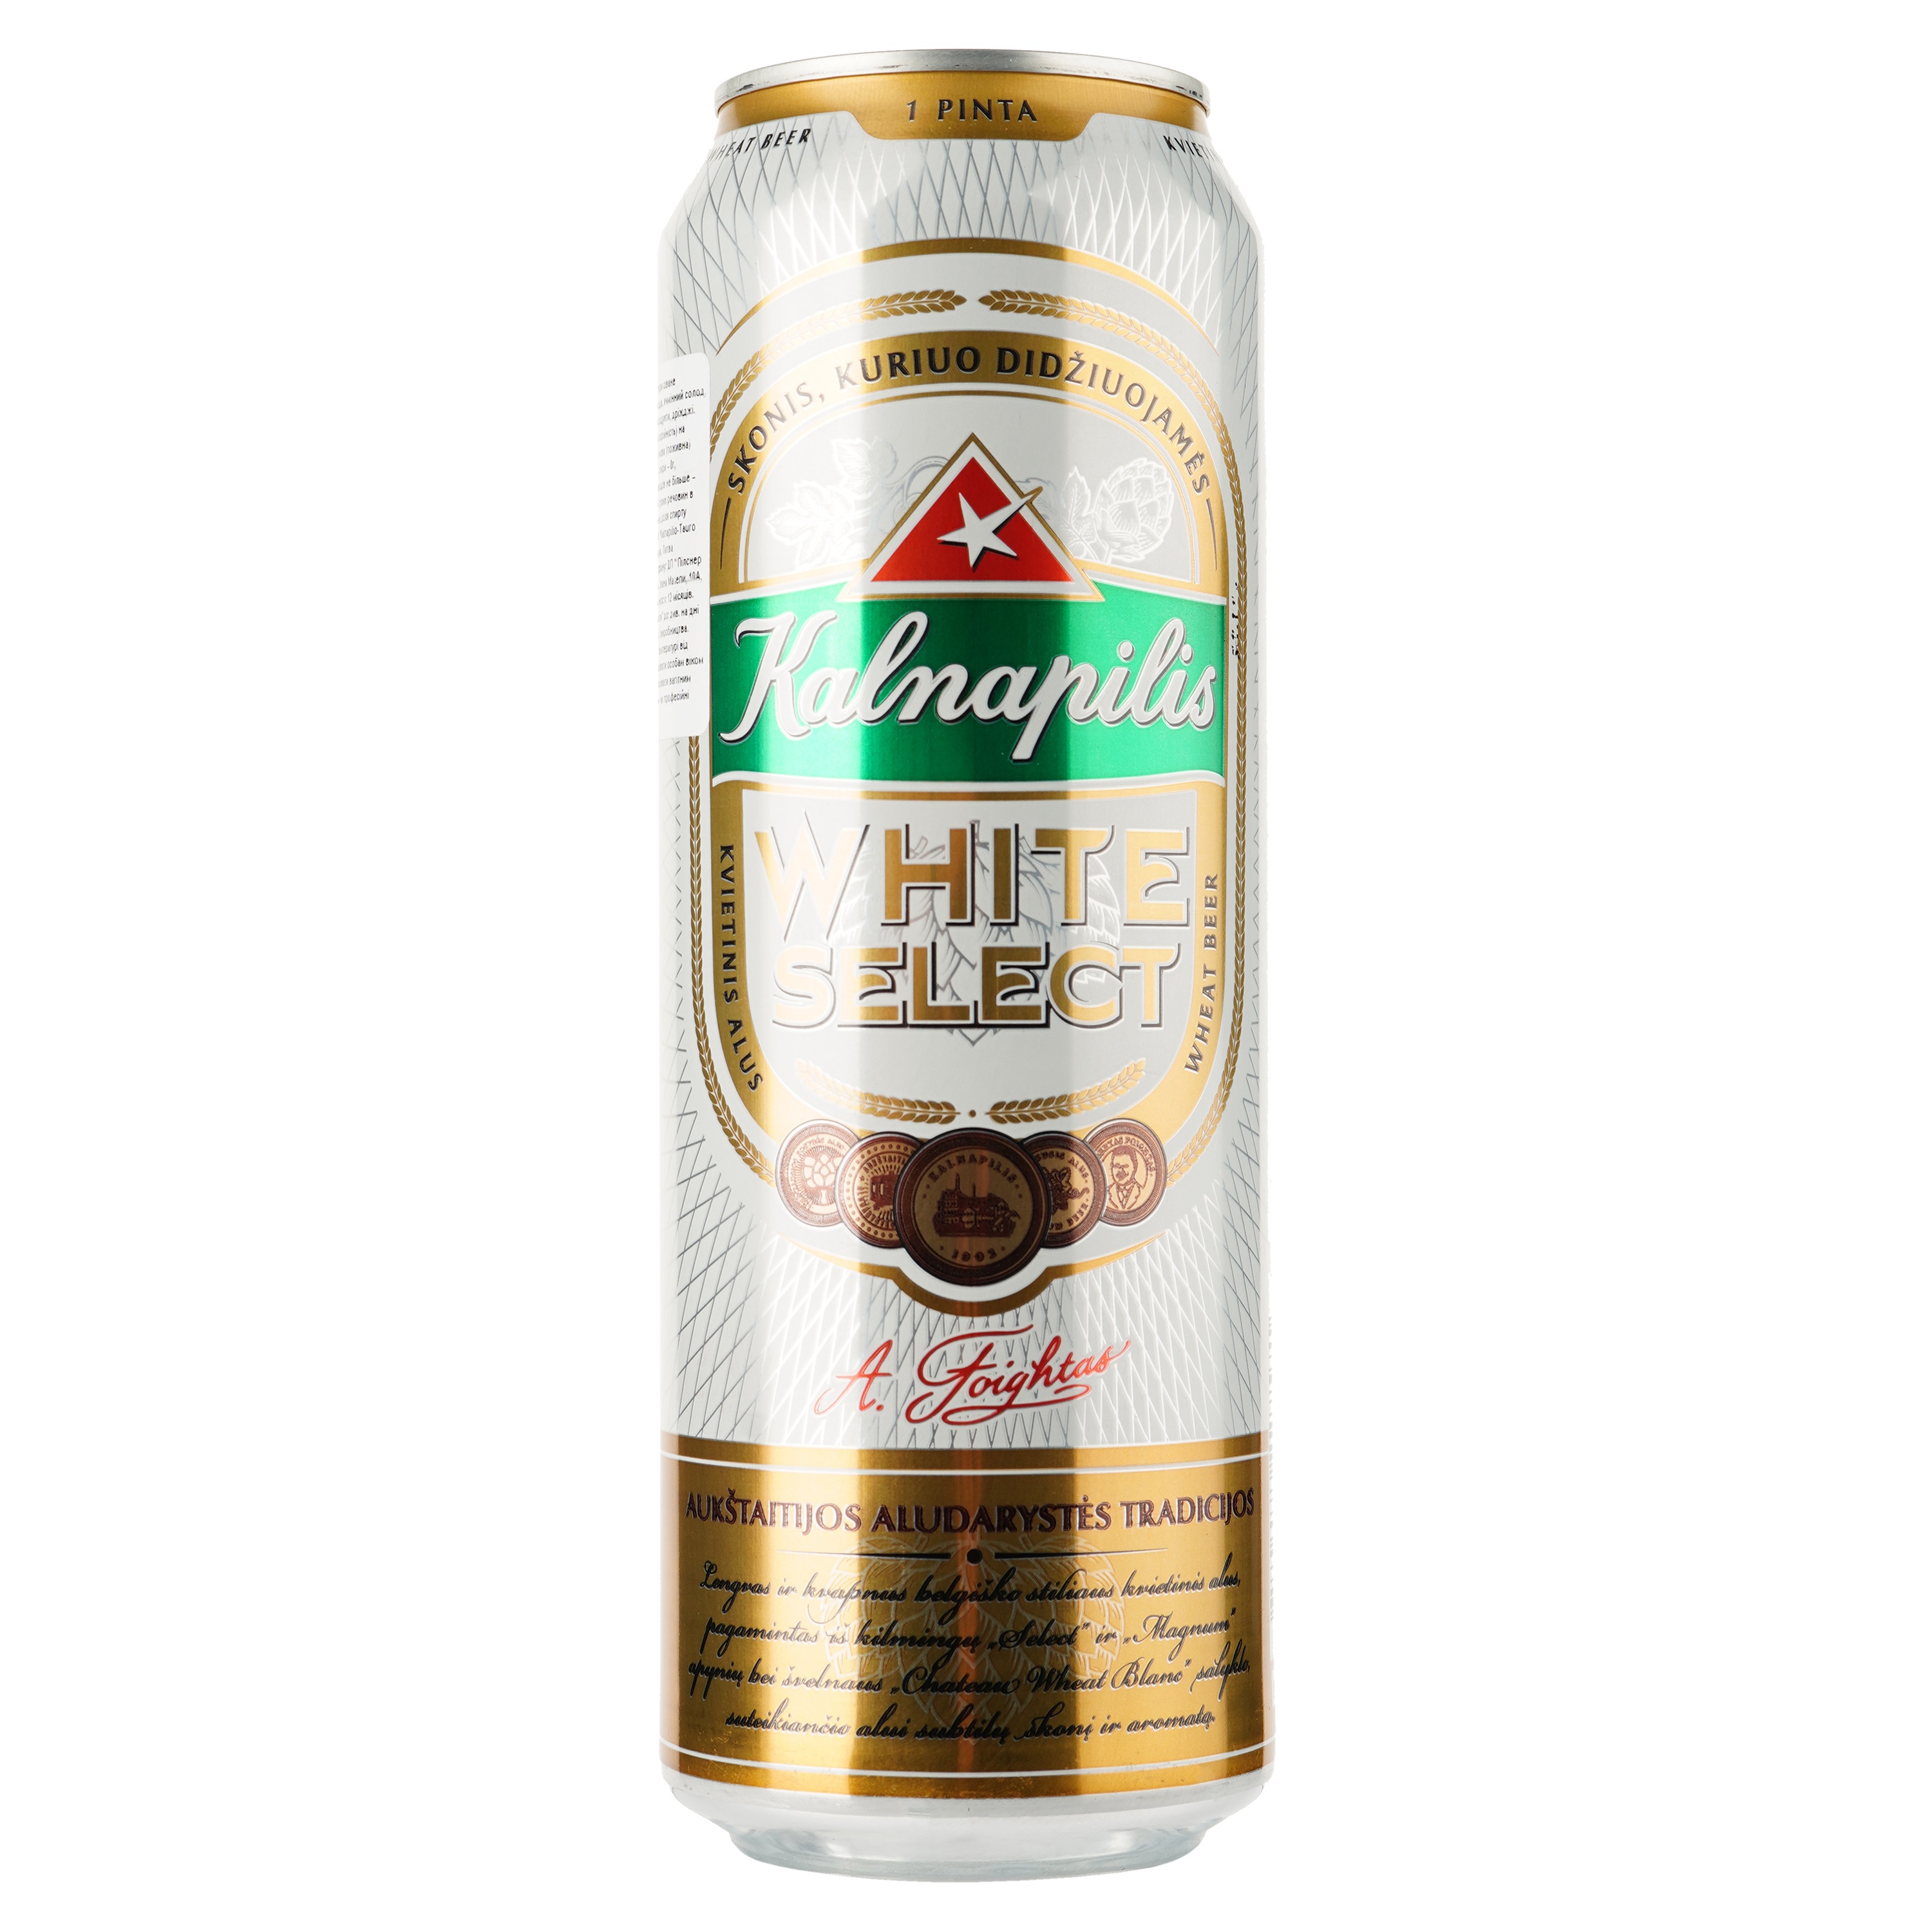 Пиво Kalnapilis White Select, светлое 5%, ж/б, 0.568 л - фото 1